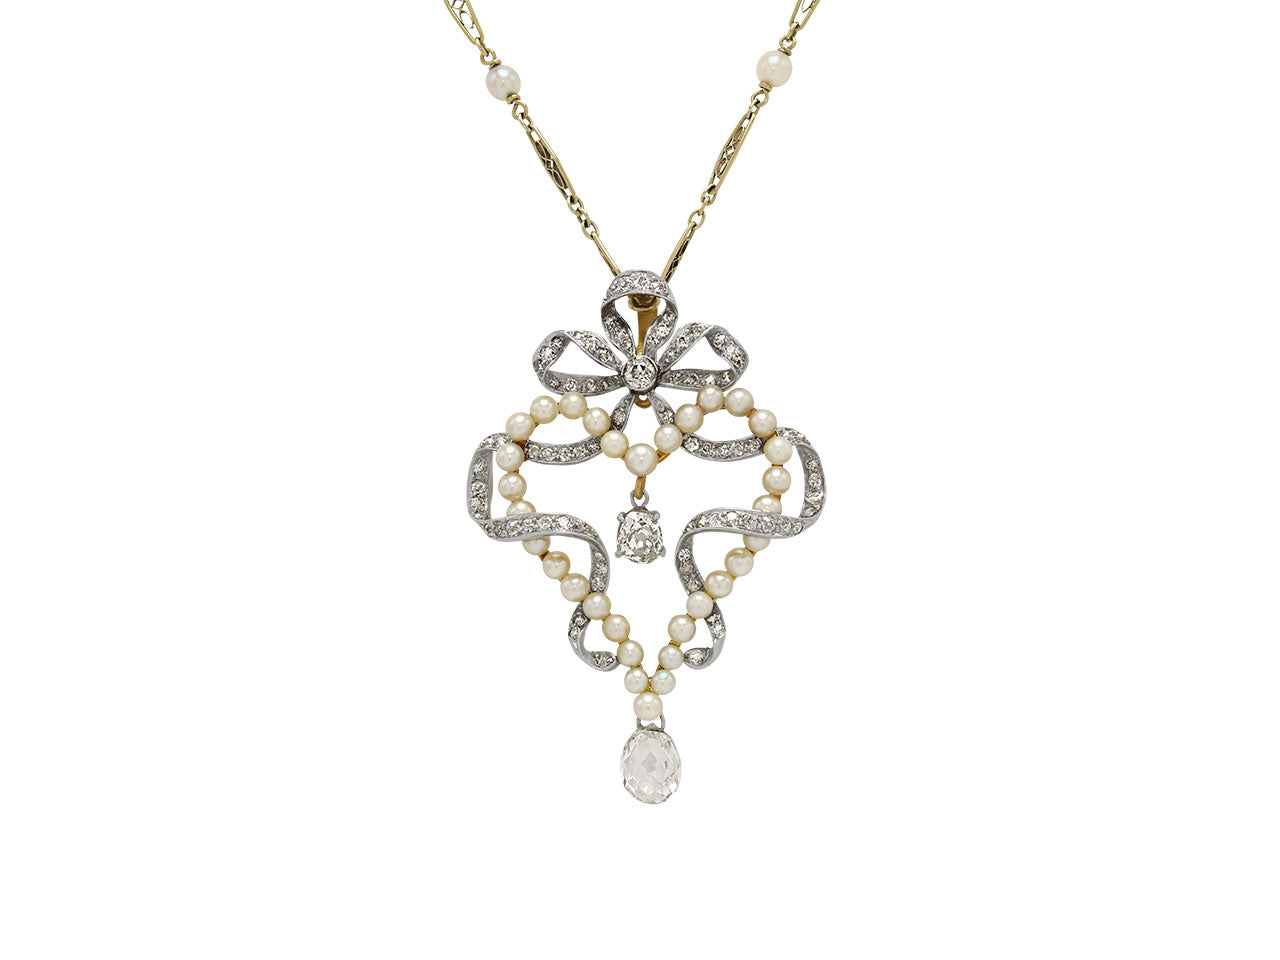 Antique Belle Époque Diamond and Pearl Pendant in Platinum over Gold